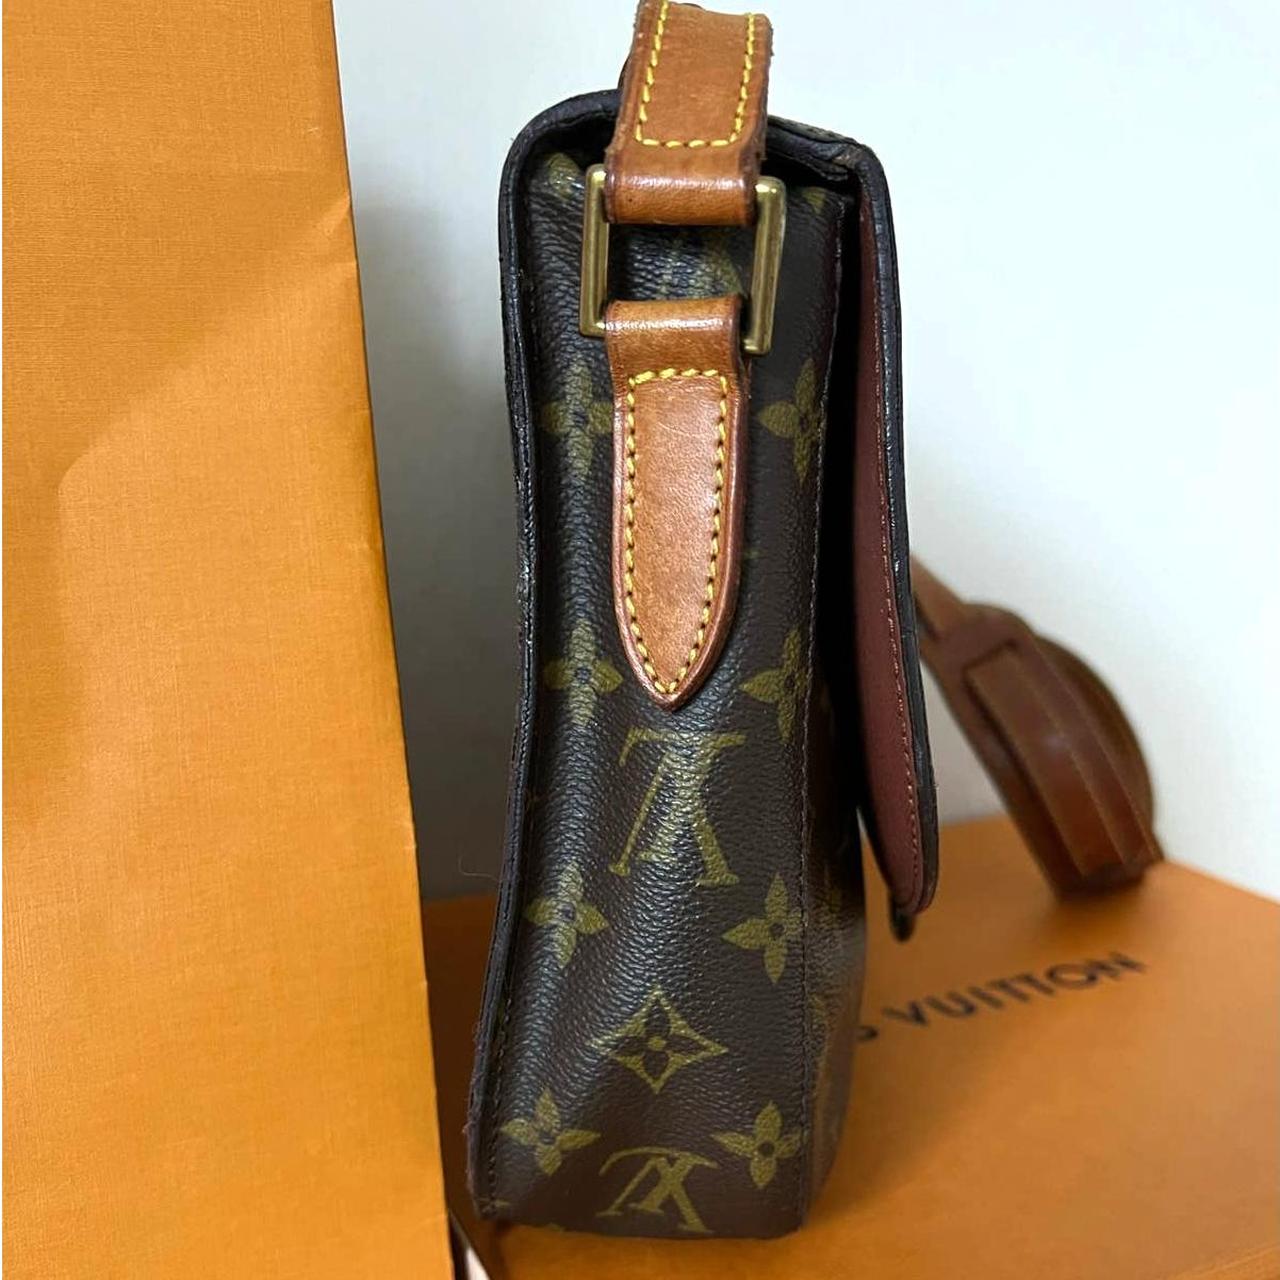 Authentic Louis Vuitton, Epi leather, Saint Cloud GM - Depop